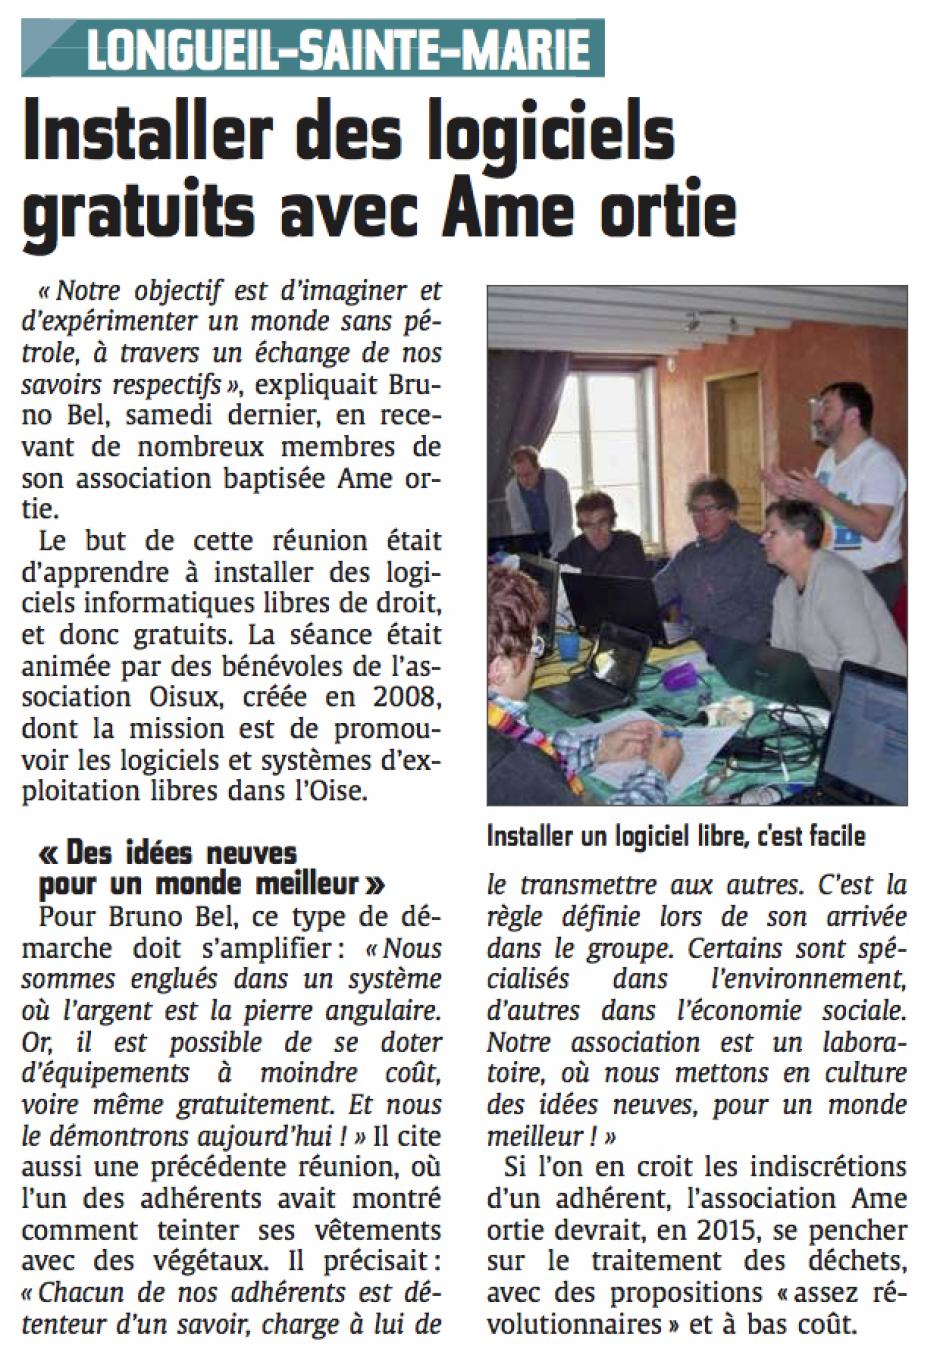 20141201-CP-Longueil-Sainte-Marie-Installer des logiciels gratuits avec Ame ortie